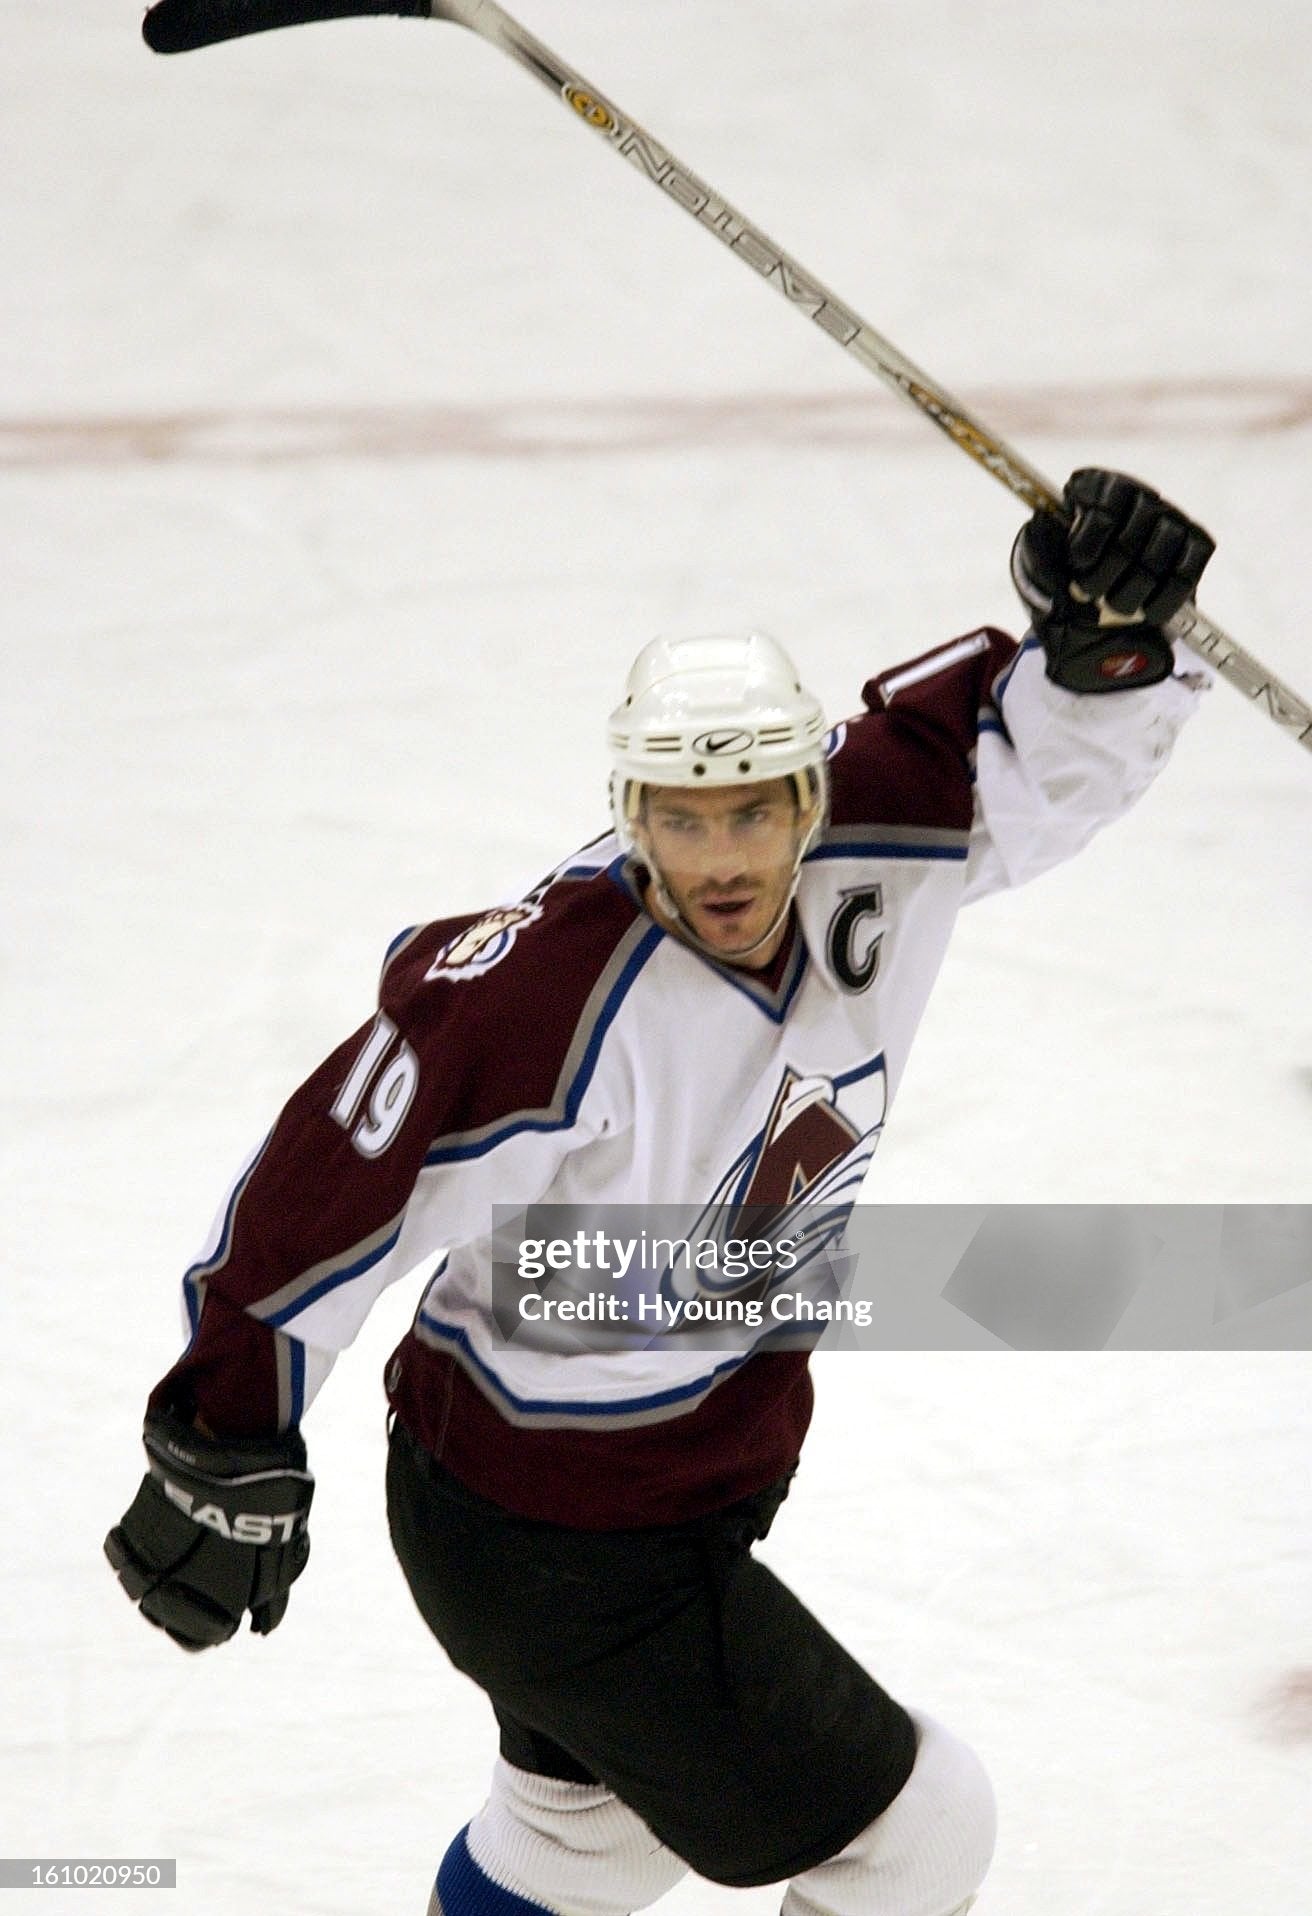 Colorado Avalanche 2000-2004 Joe Sakic Hockey Jersey (XXL)